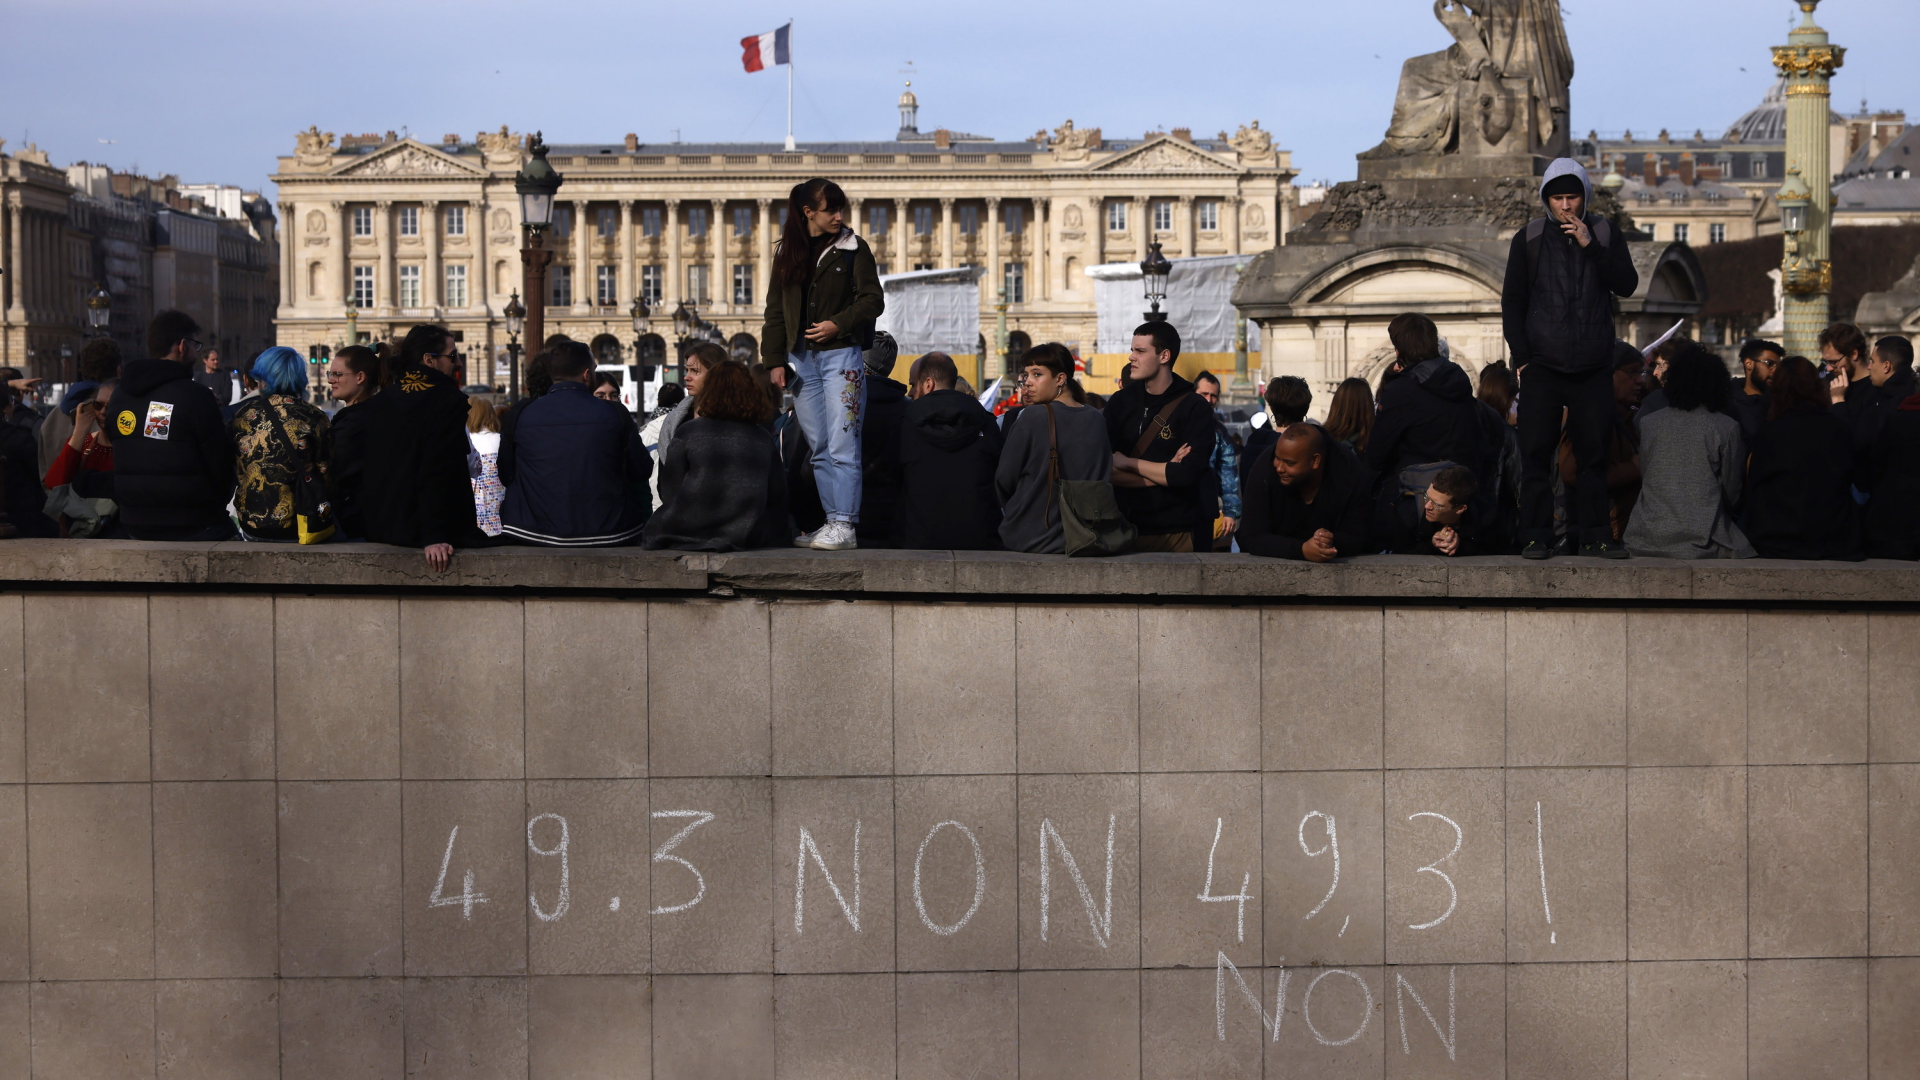 "49.3 Non" steht mit Kreide an einer Mauer am Parise Place de la Concorde geschrieben, dahinter und darauf demonstrieren Menschen | AP